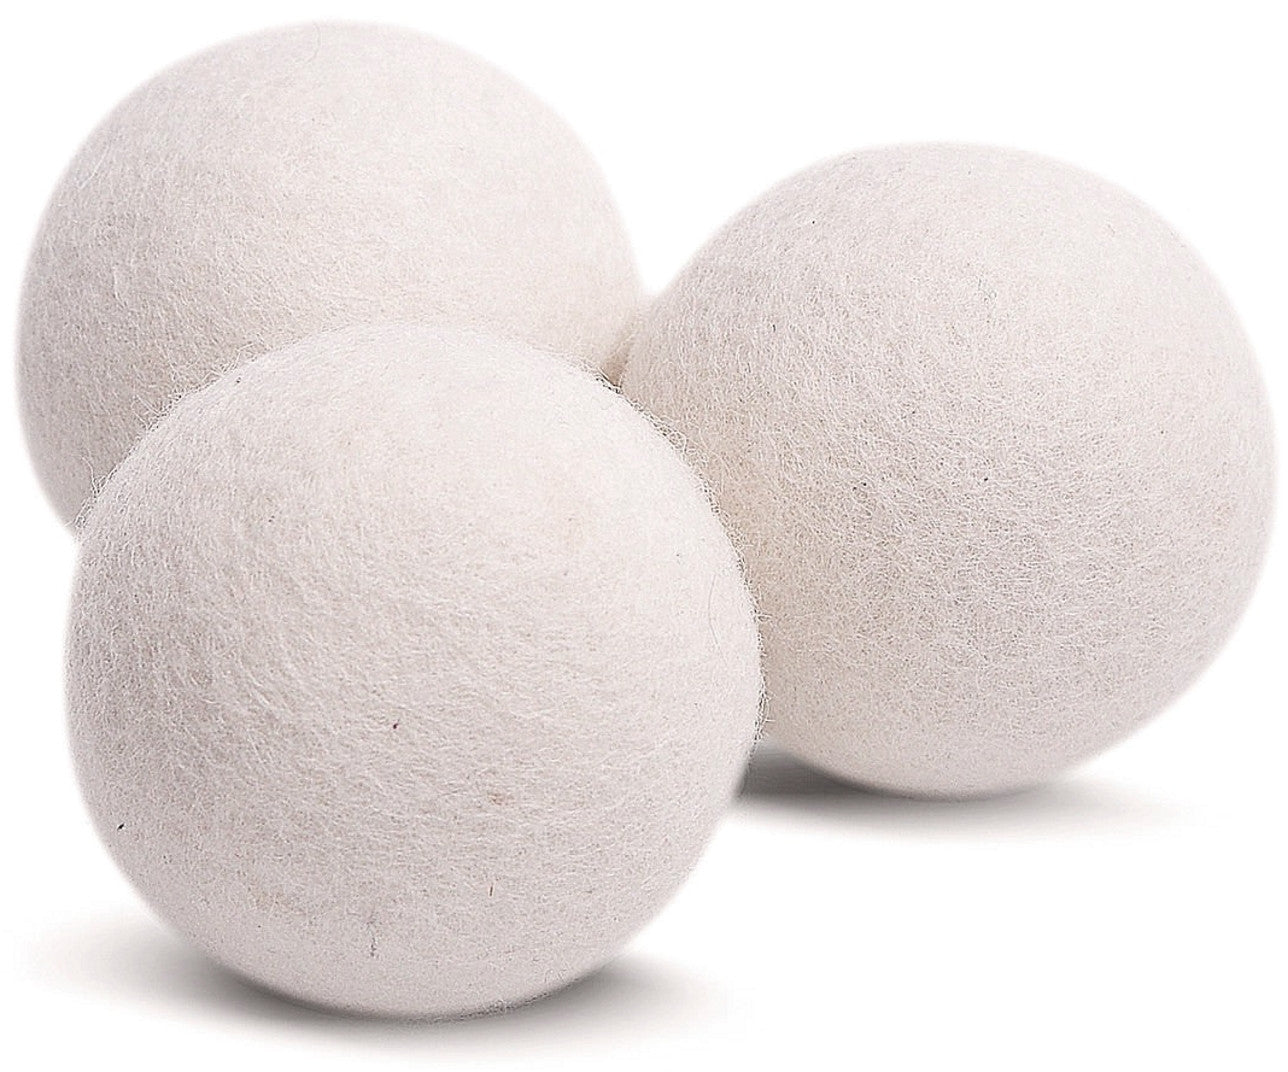 Dry ball. Курт (курут). Шарики для стирки белья Dryer balls. Wool Dryer balls. Шерстяные шарики для сушильной машины.